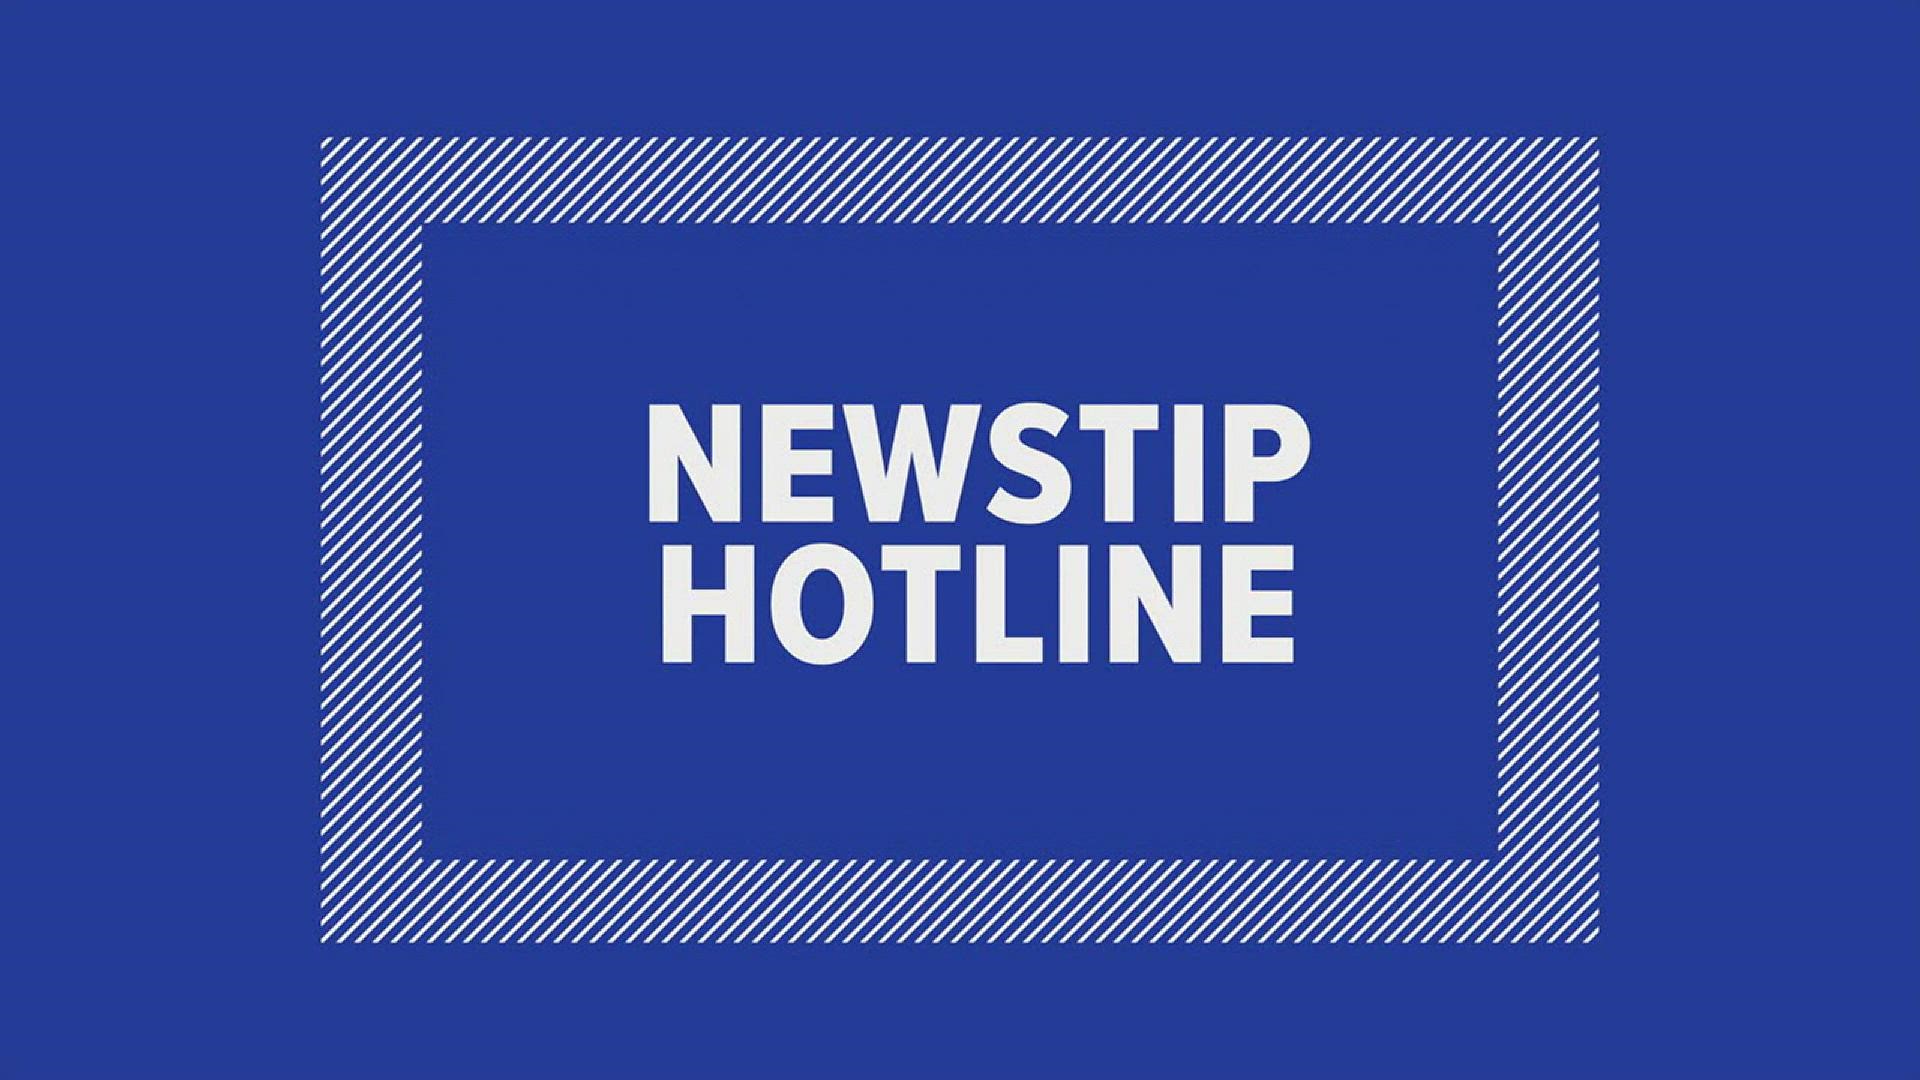 Newstip hotline for web stories